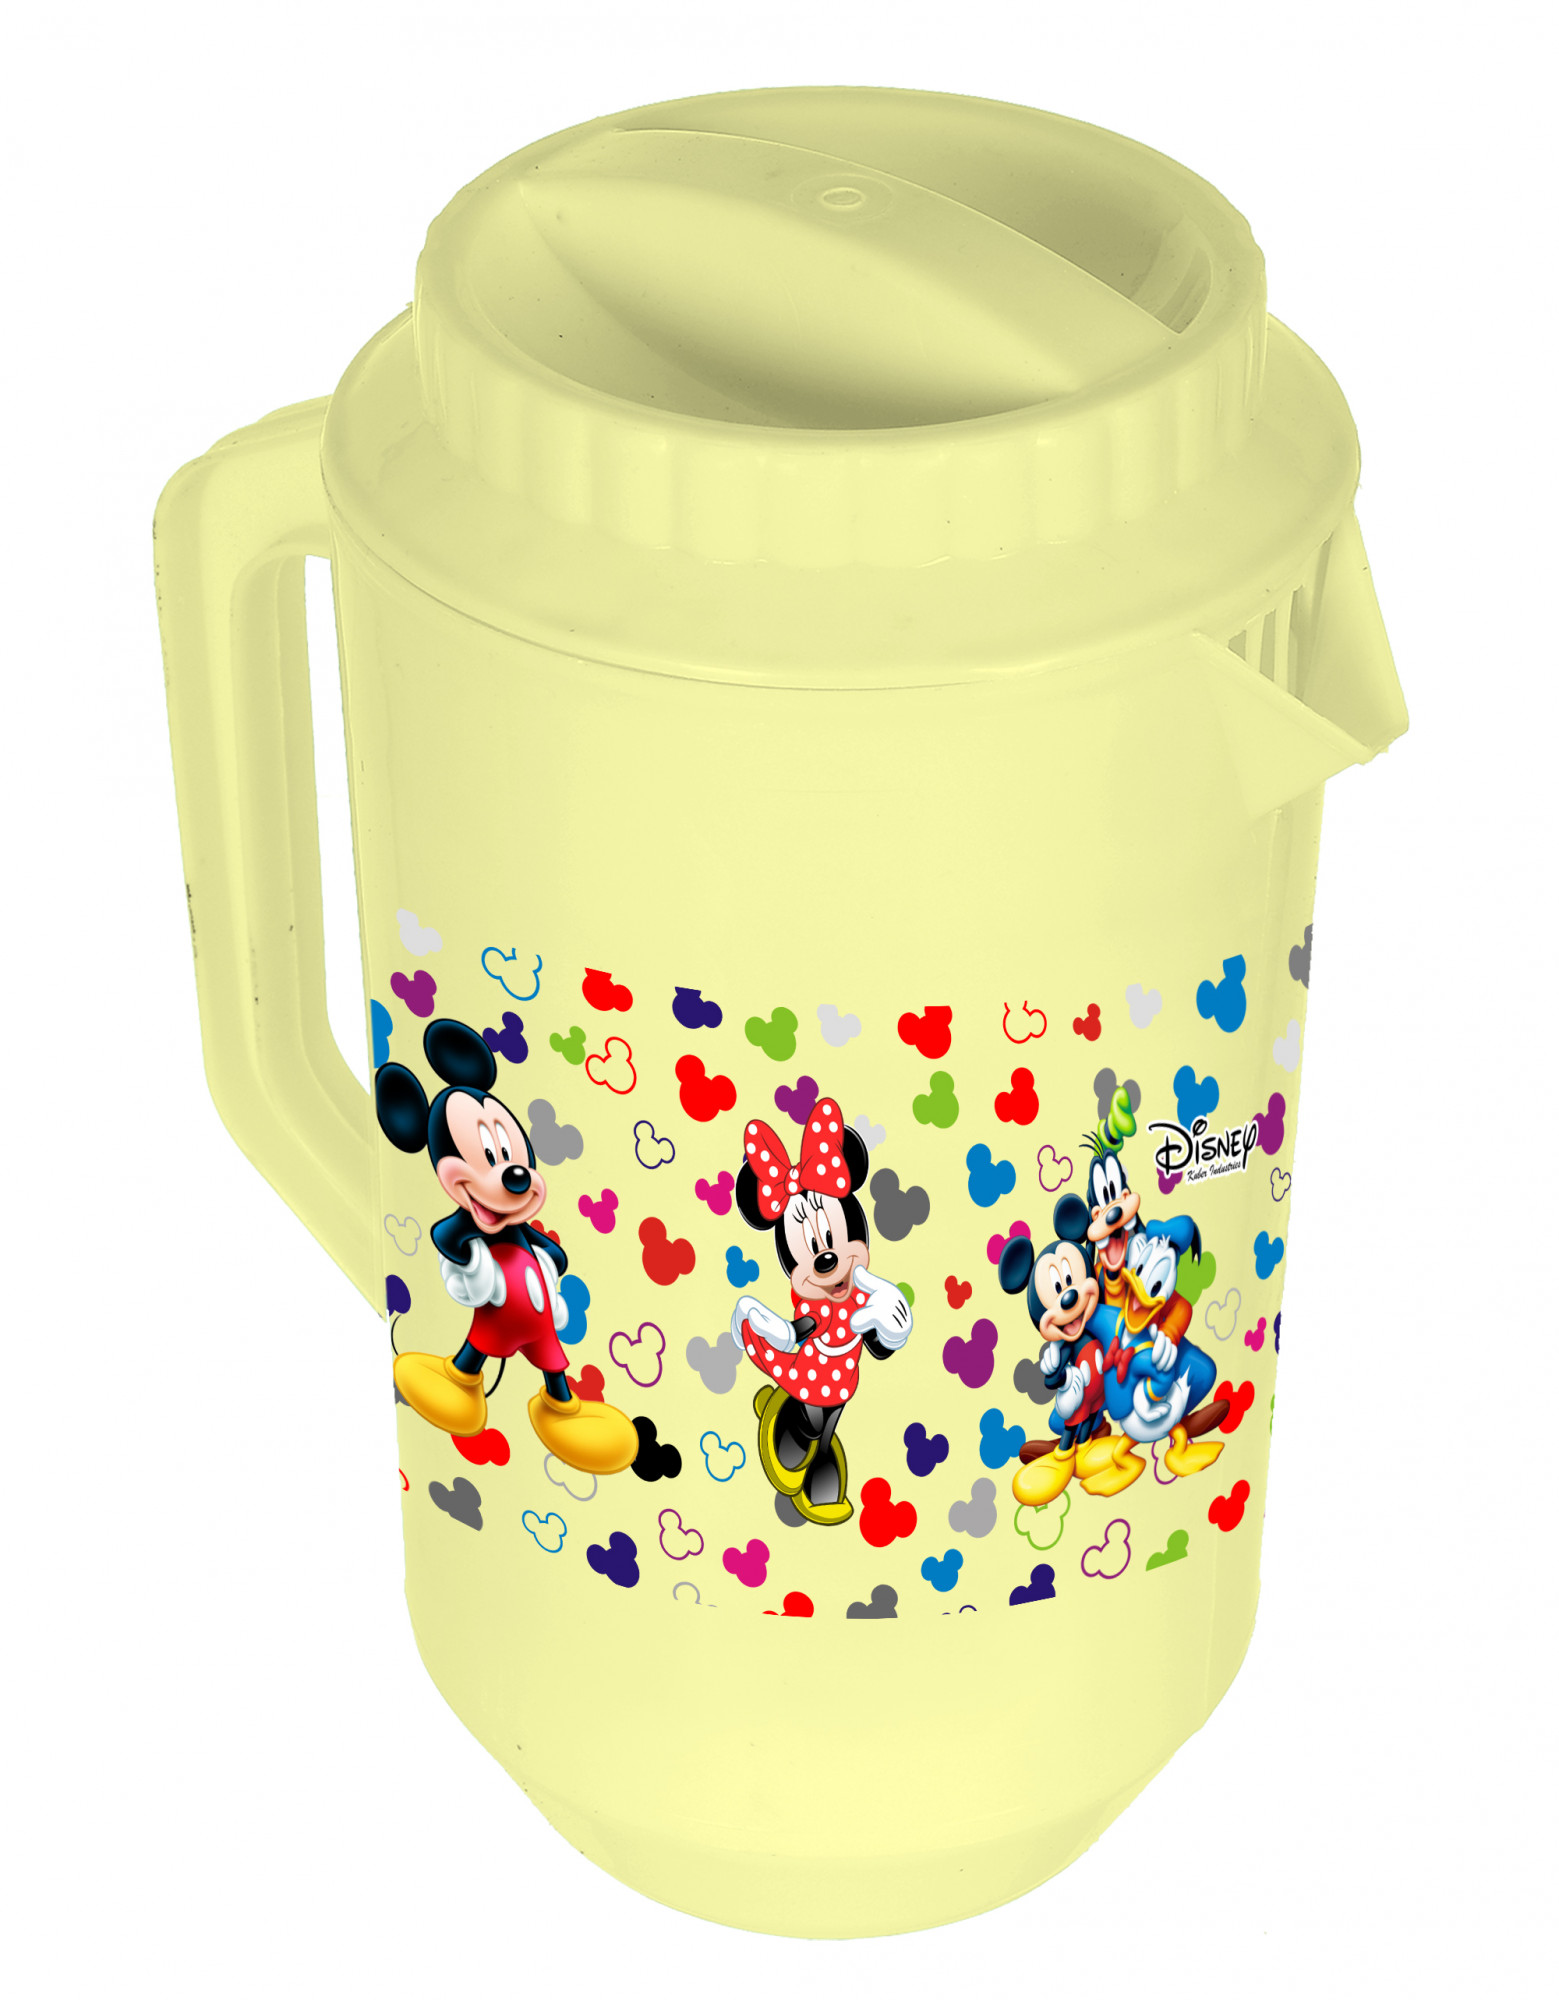 Kuber Industries Disney Team Mickey Print Unbreakable Multipurpose Plastic Water & Juice Jug With Lid,2 Ltr (Set Of 2, Cream & Blue)